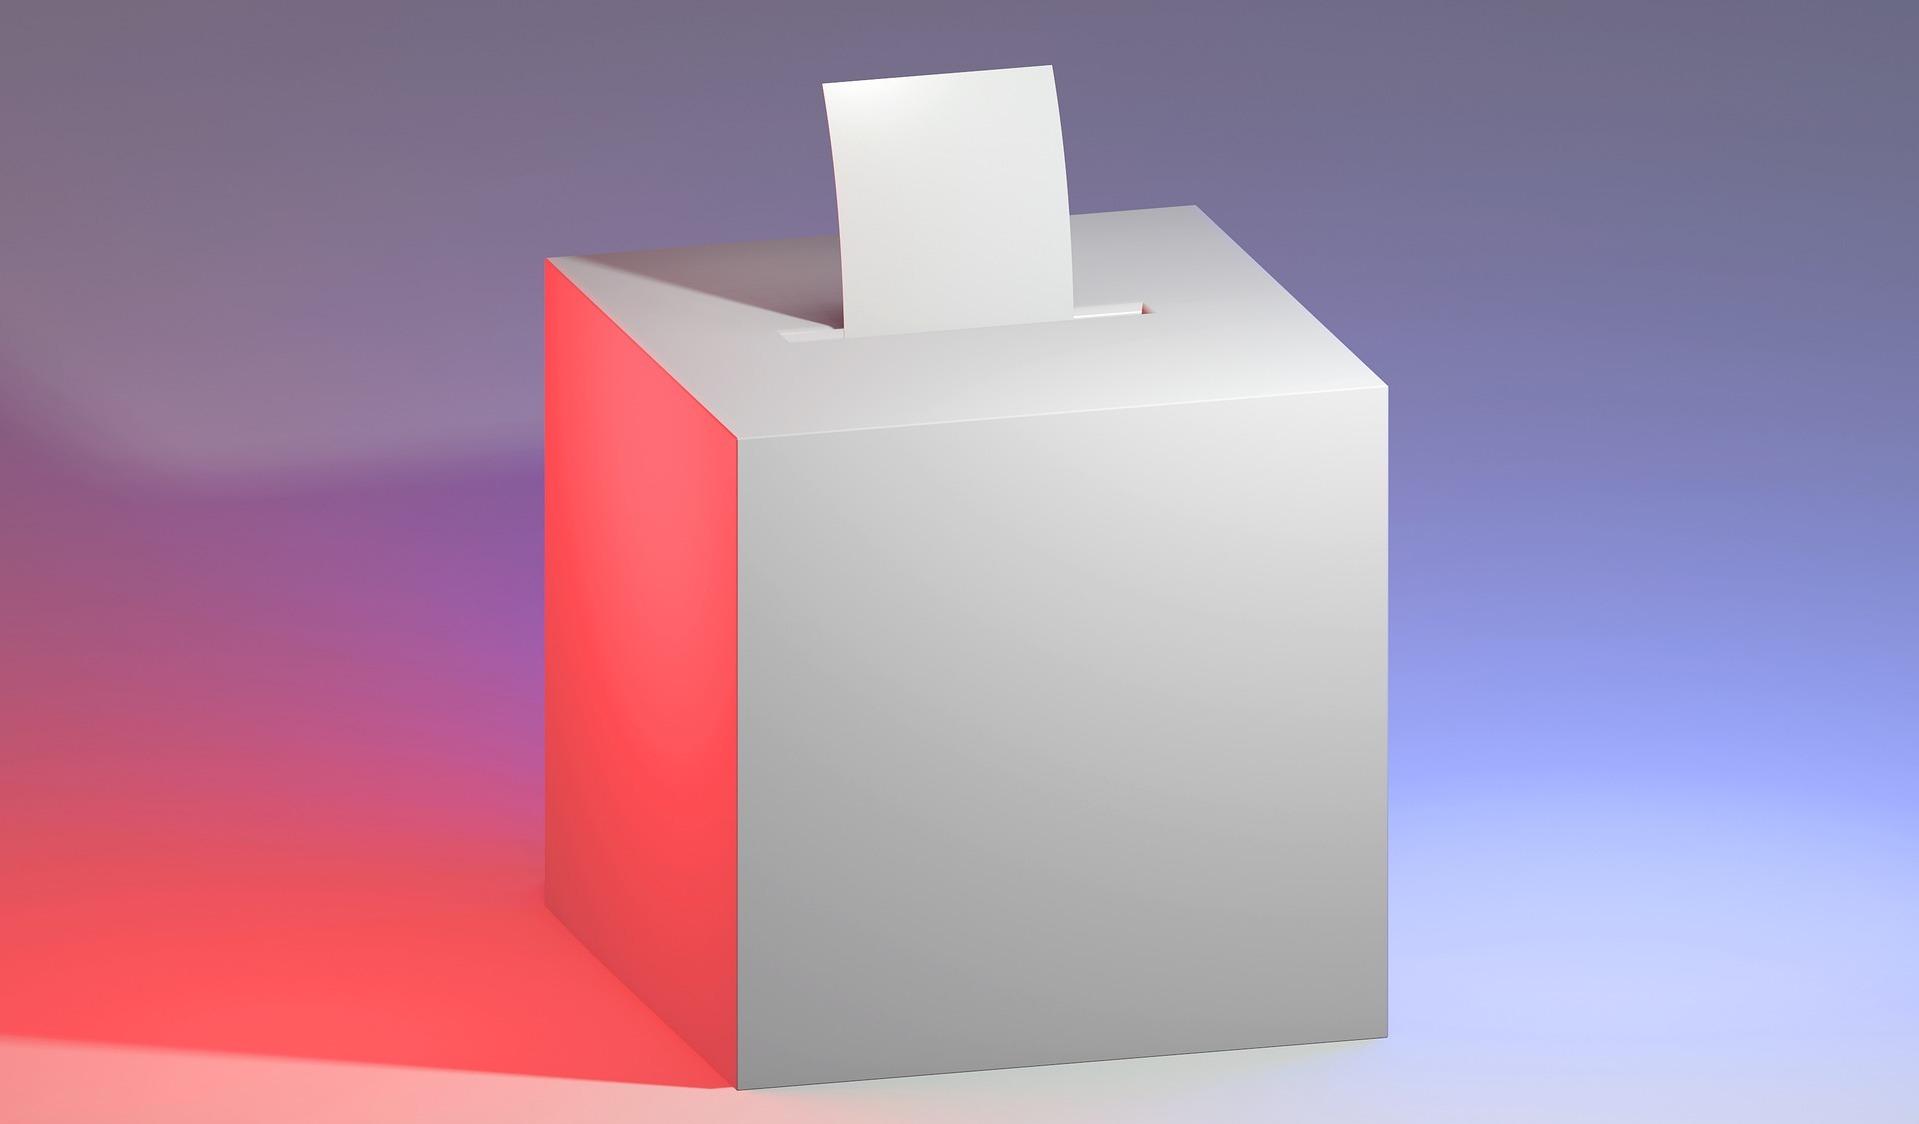 El congreso D3CON analizará las elecciones digitales y el voto electrónico